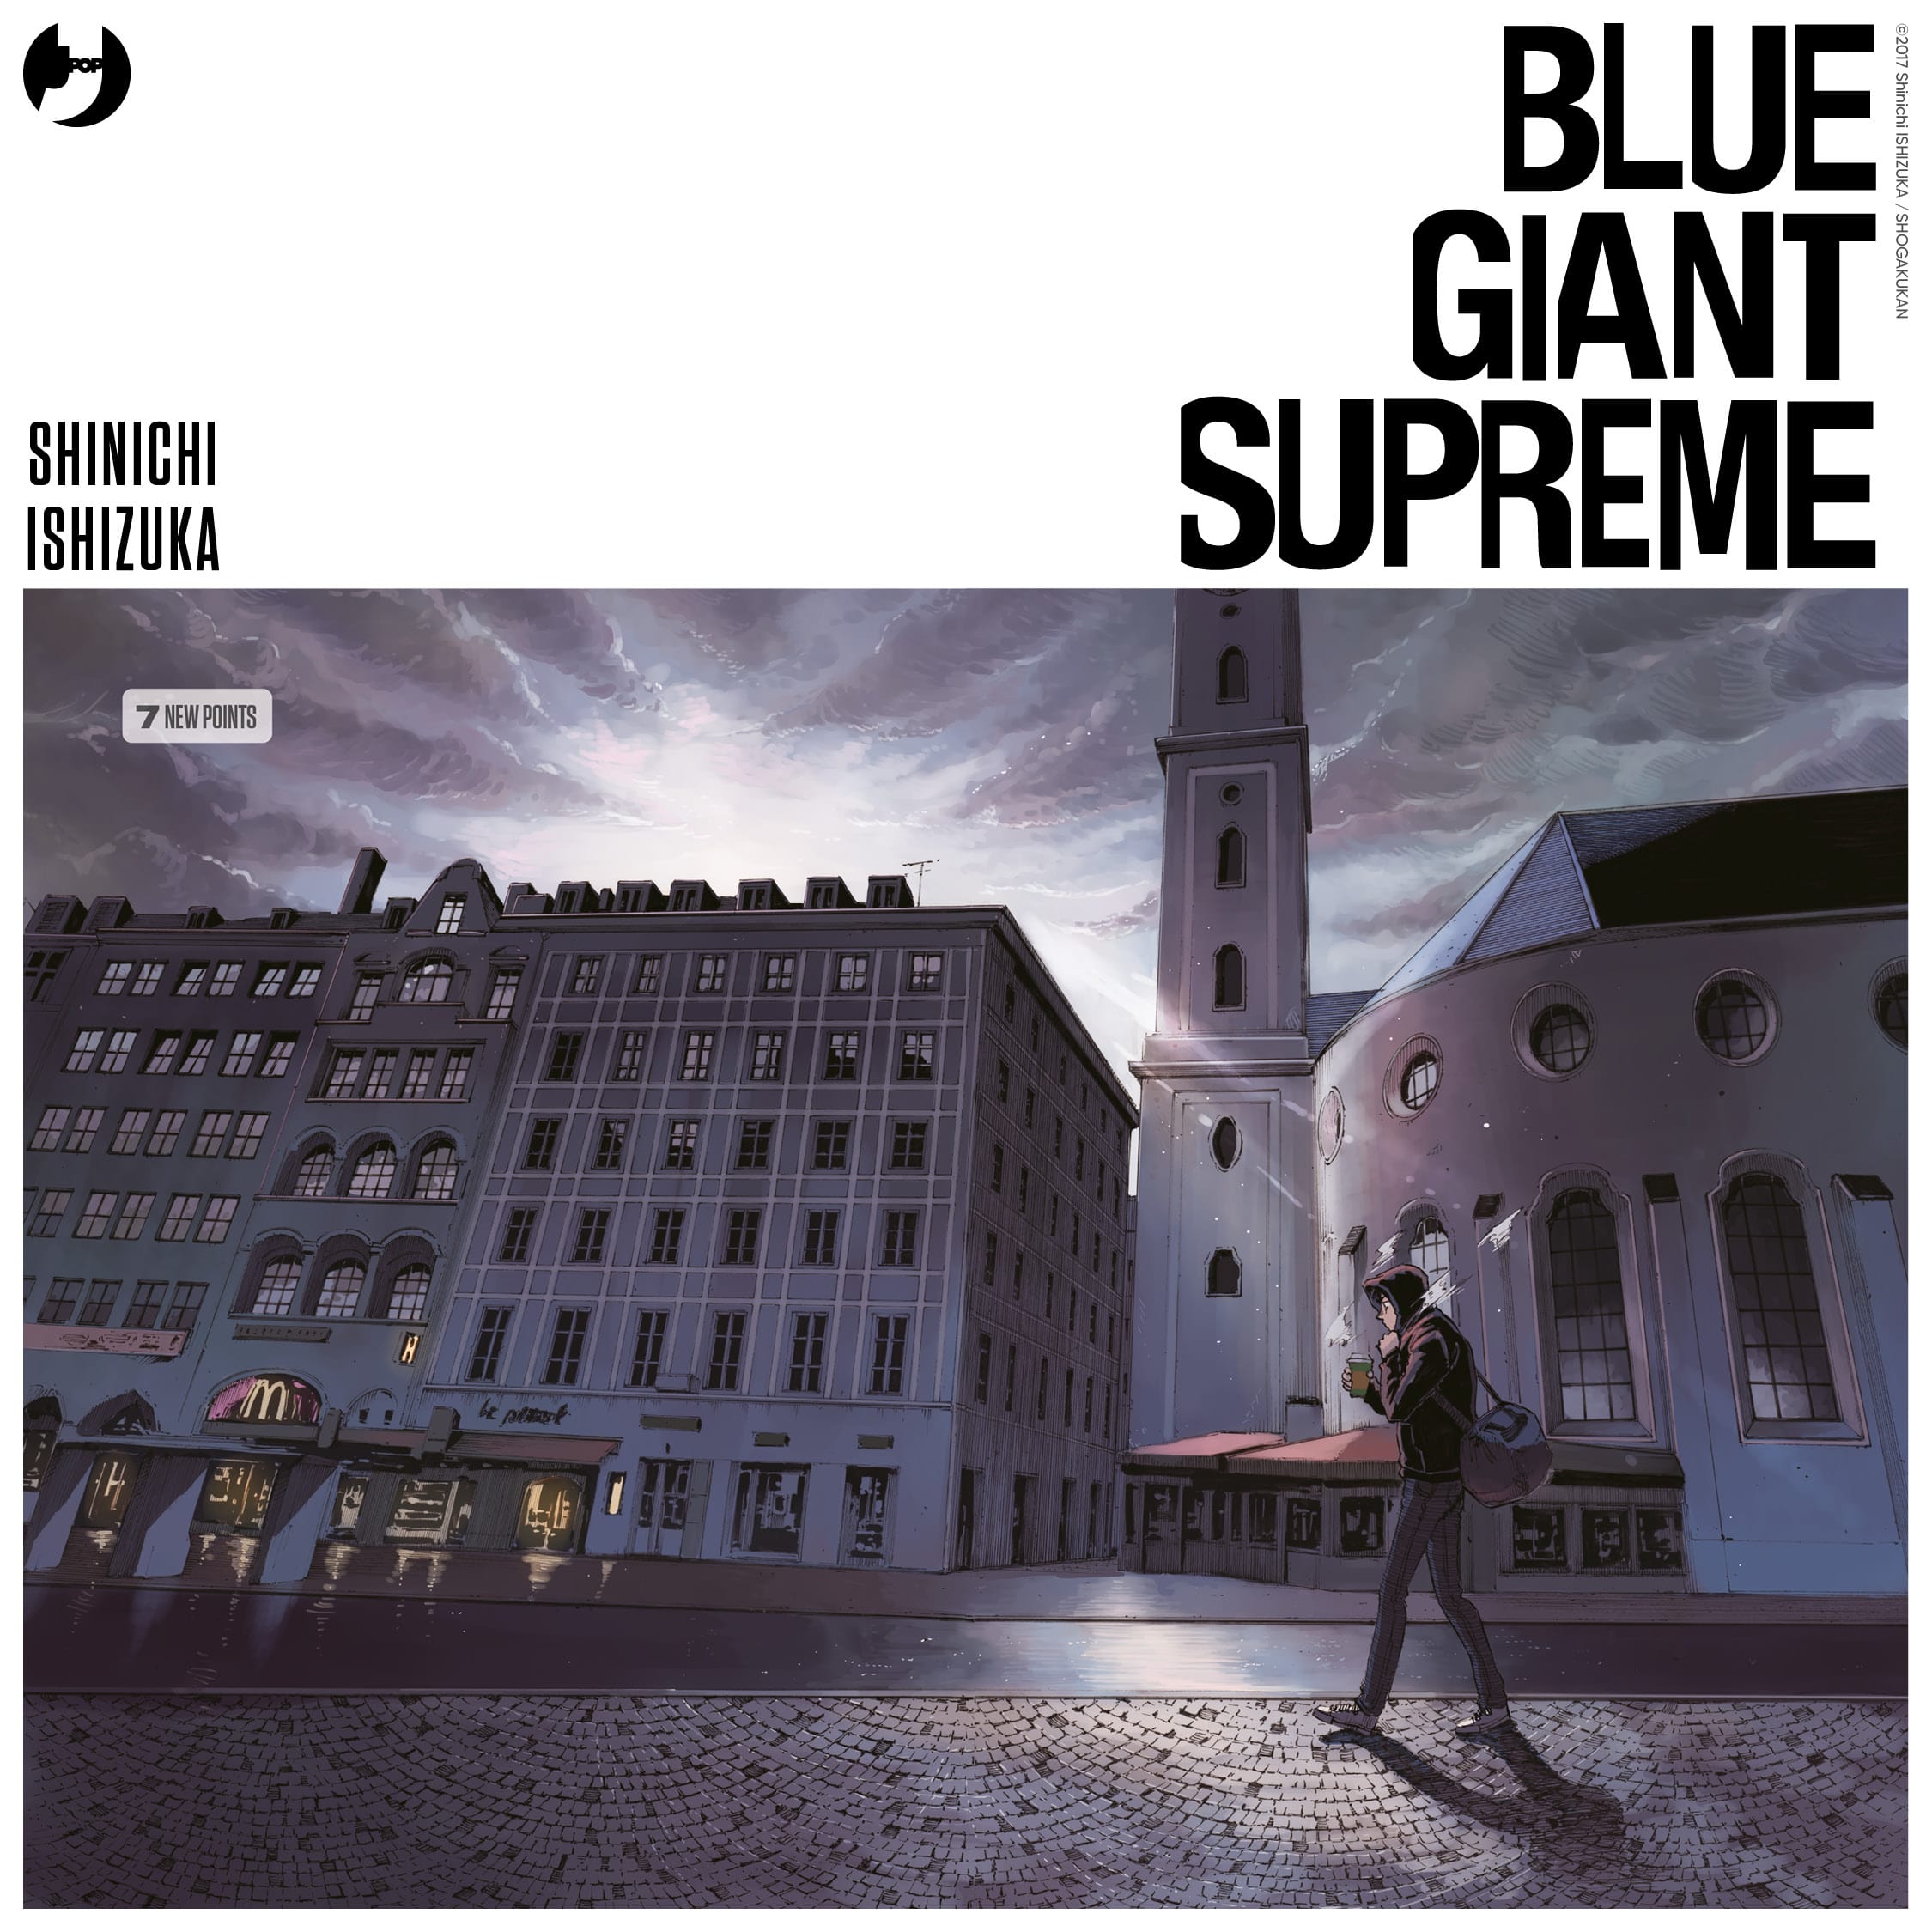 Un'illustrazione di Blue Giant Supreme di Shinichi Ishizuka